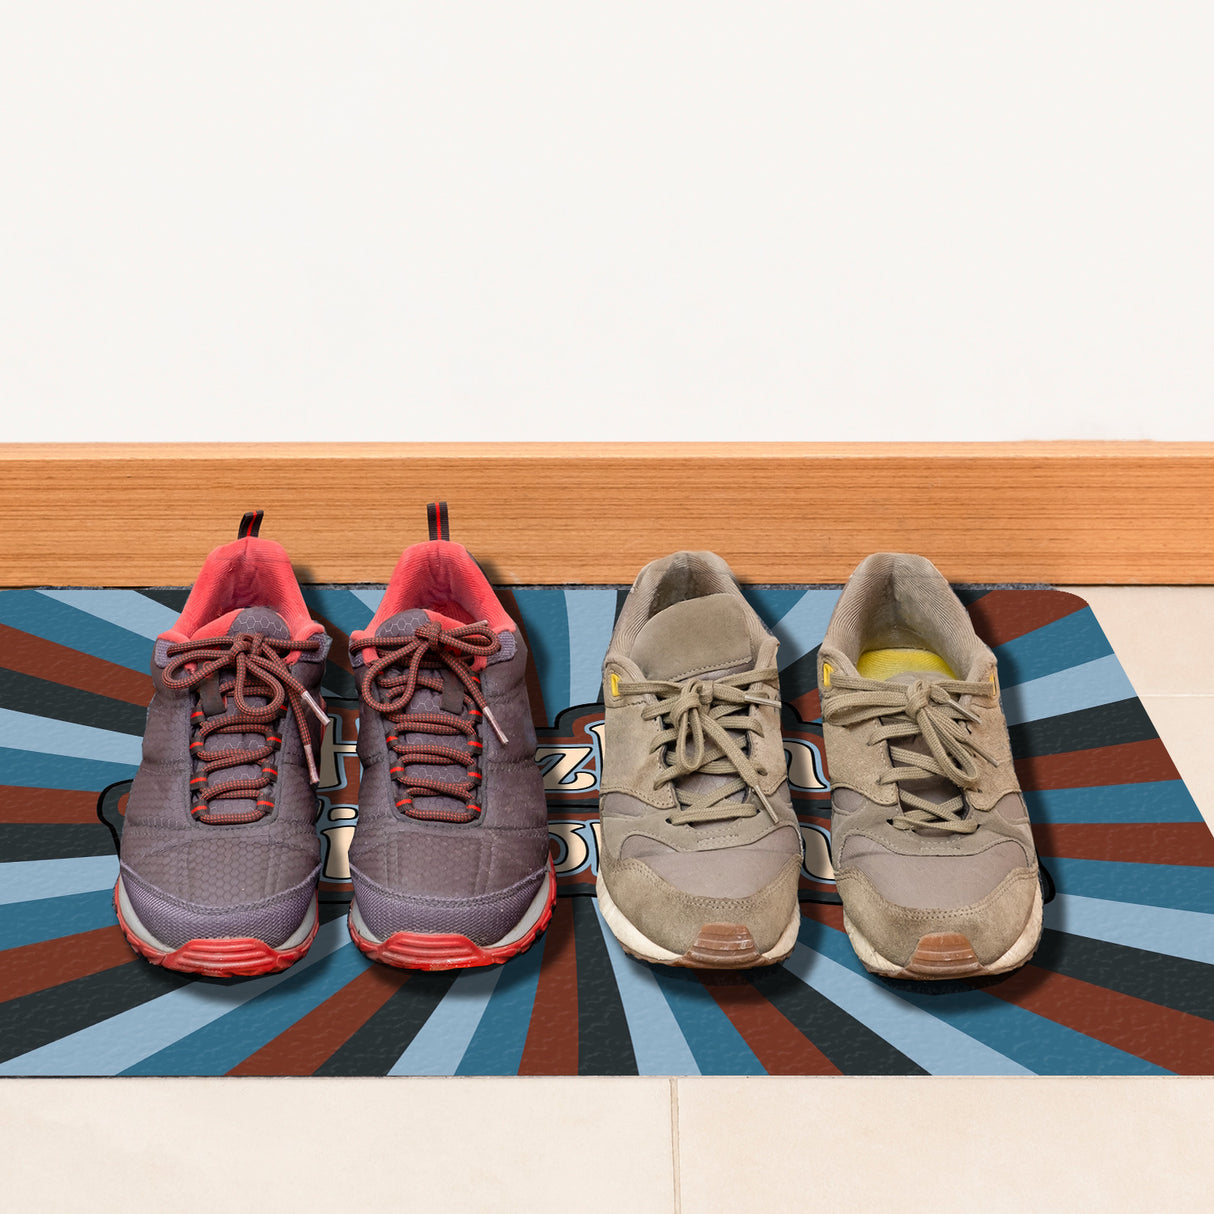 Farbenfrohe Herzlich Willkommen Fußmatte in 35x50 cm ohne Rand in gedeckten Farben